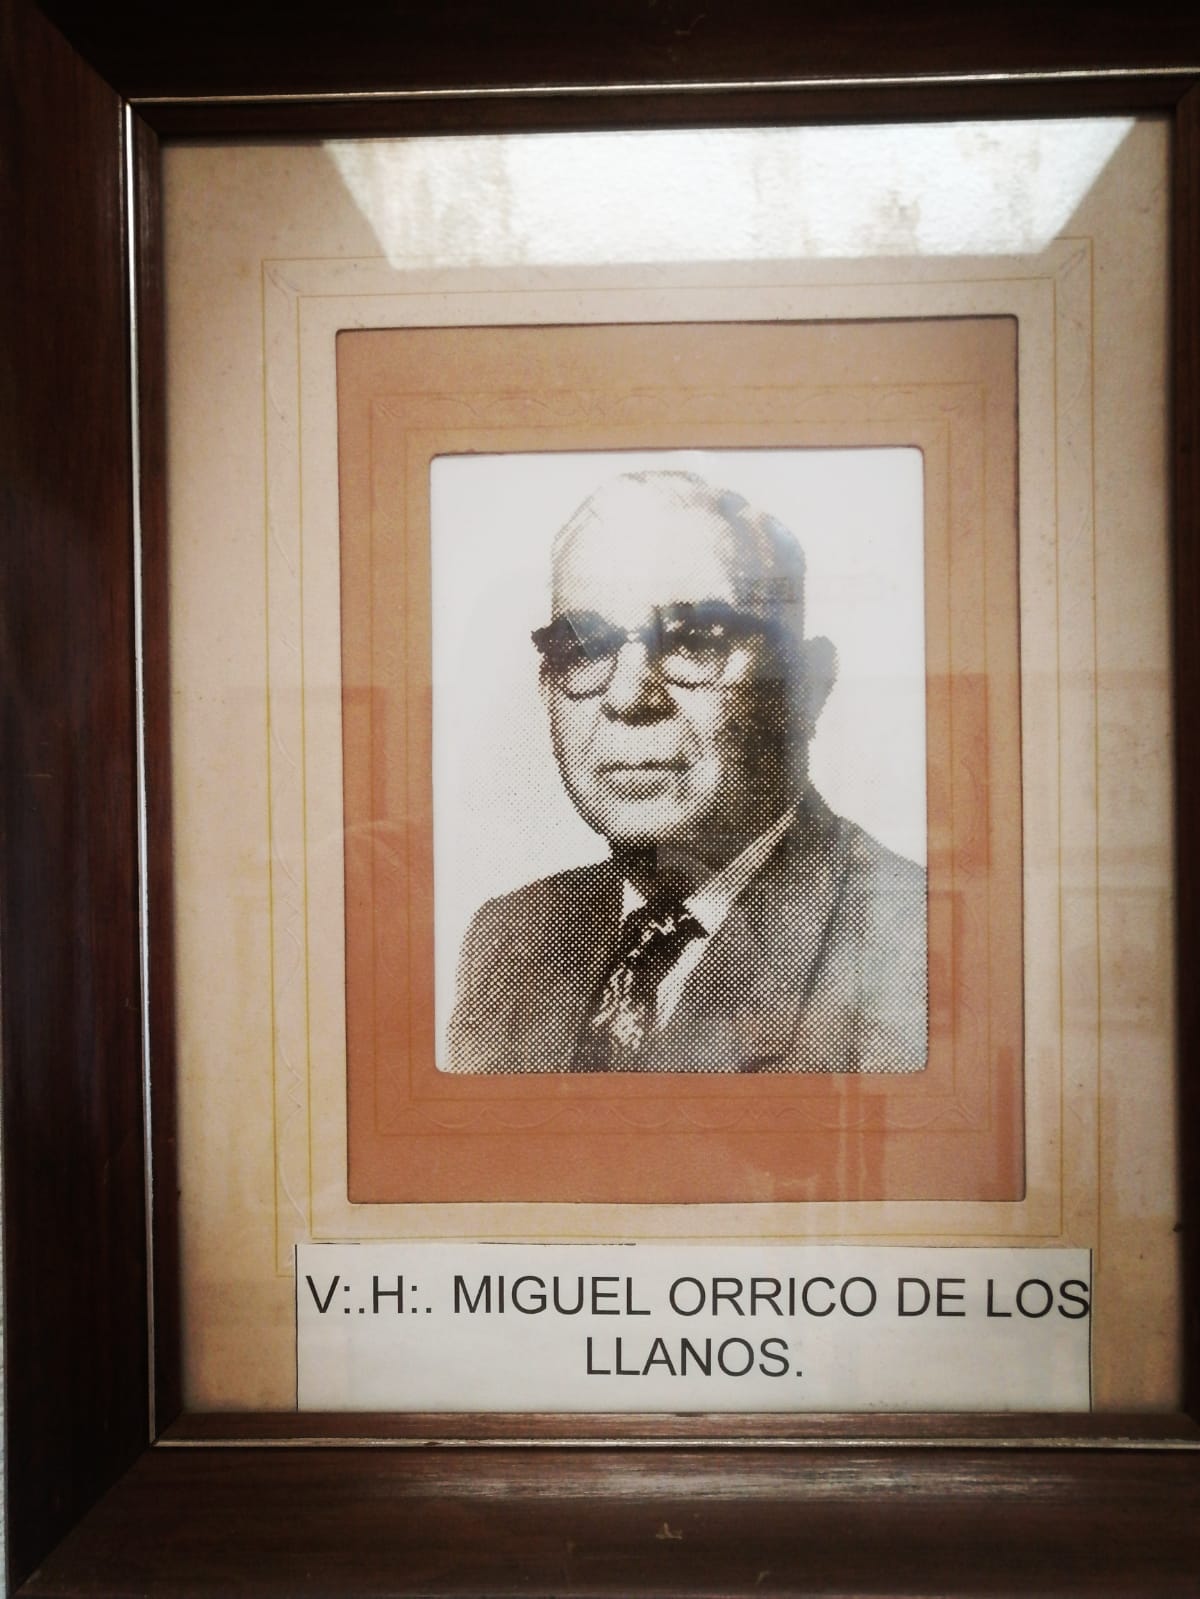 V:.H:. Miguel Orrico de los Llanos - Gobernador interino (23 de marzo de 1955 - 31 de diciembre de 1958)